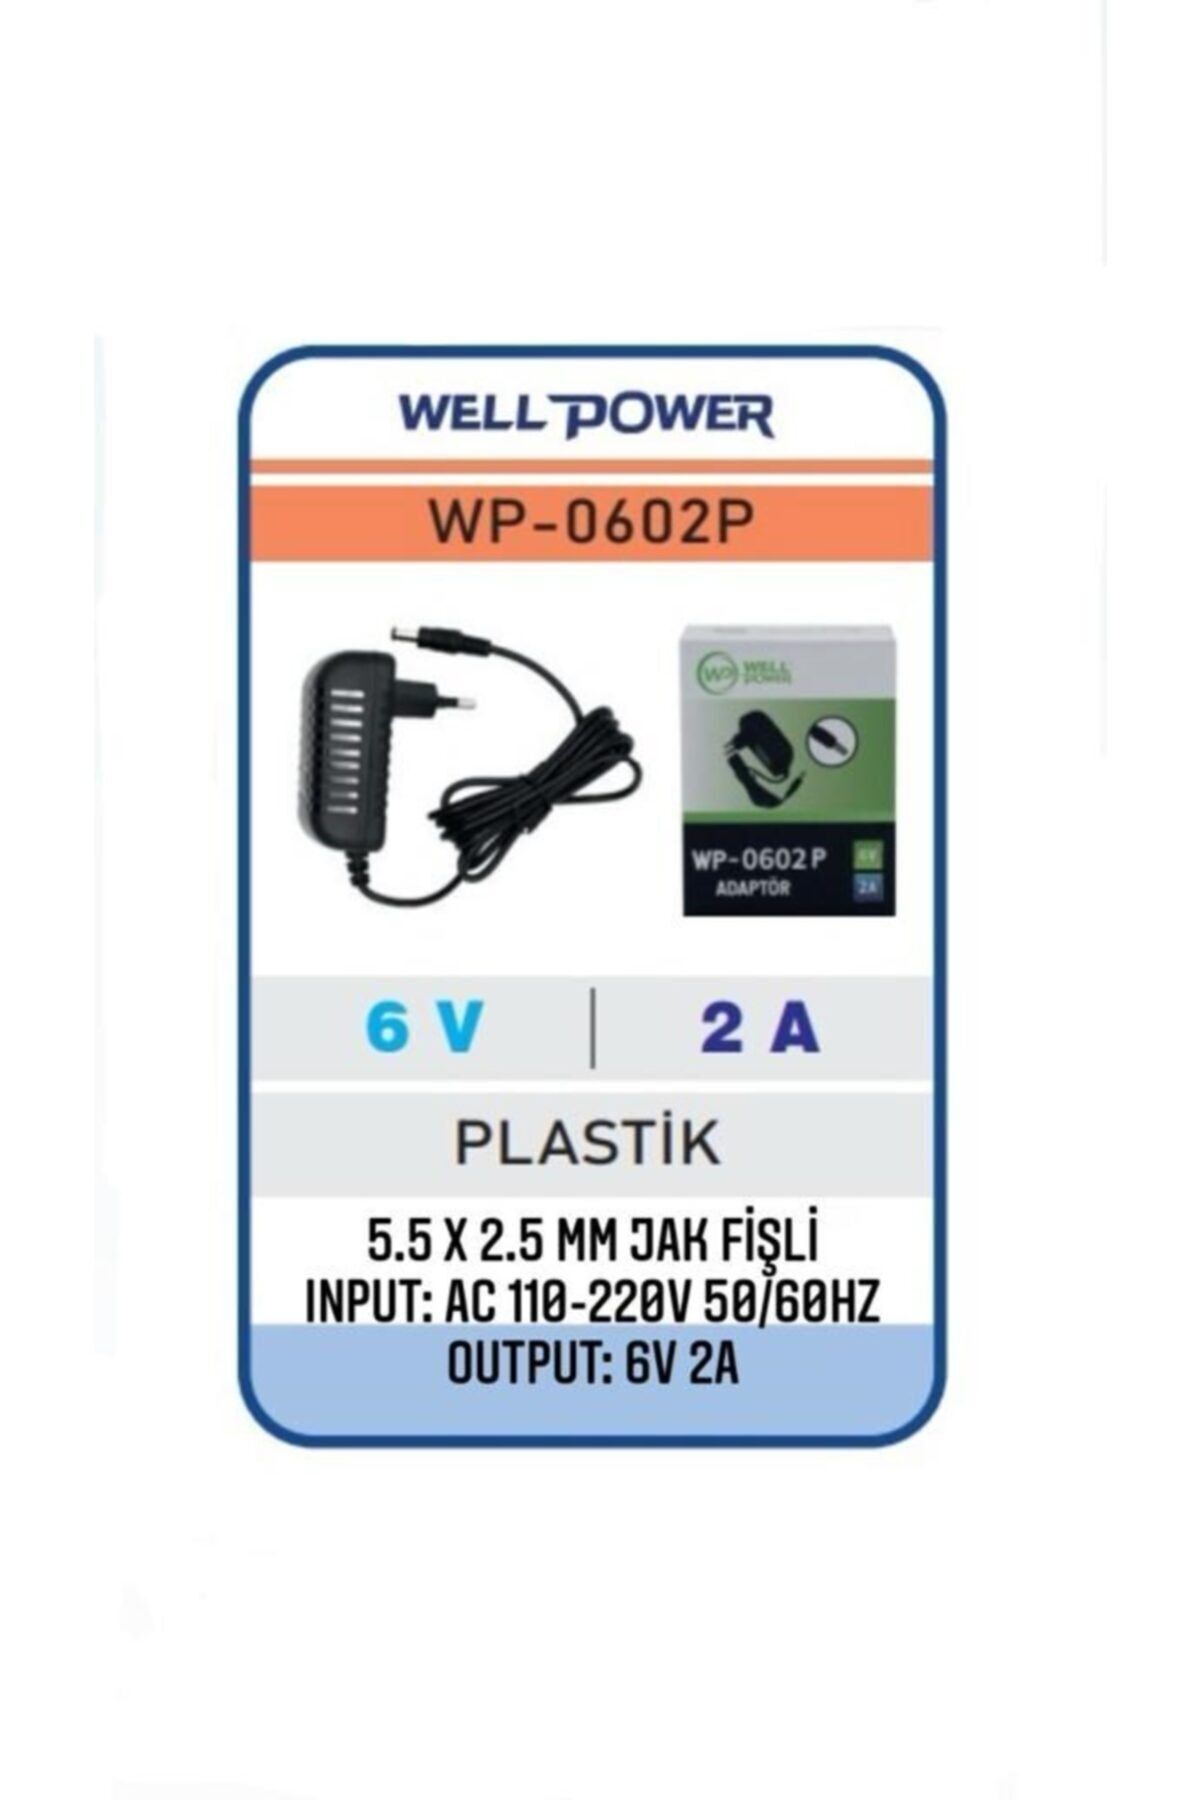 WELL POWER 6v 2a Adaptör 6 Volt 2 Amper 5.5 X 2.5 Mm Jak Fişli Plastik Kasa Adaptör Wellpower Wp-0602p